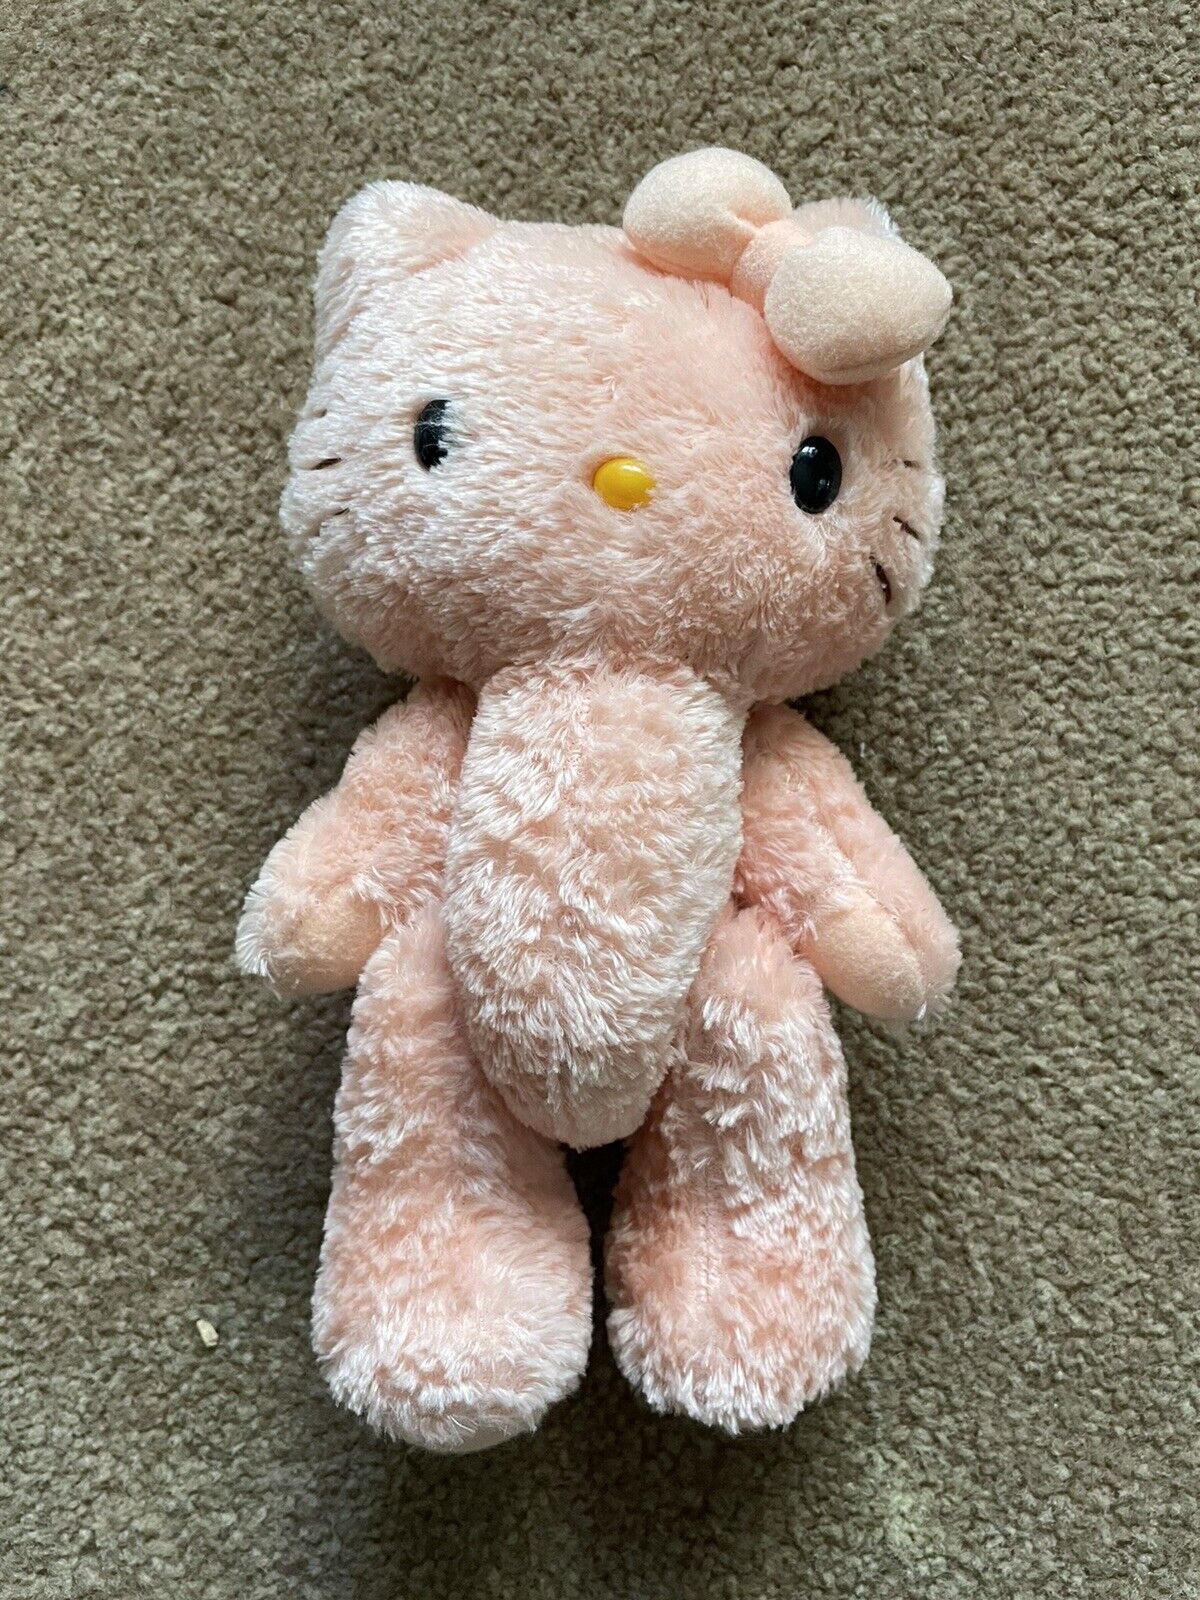 Rare 2004 Sanrio Smiles Hello Kitty Plush